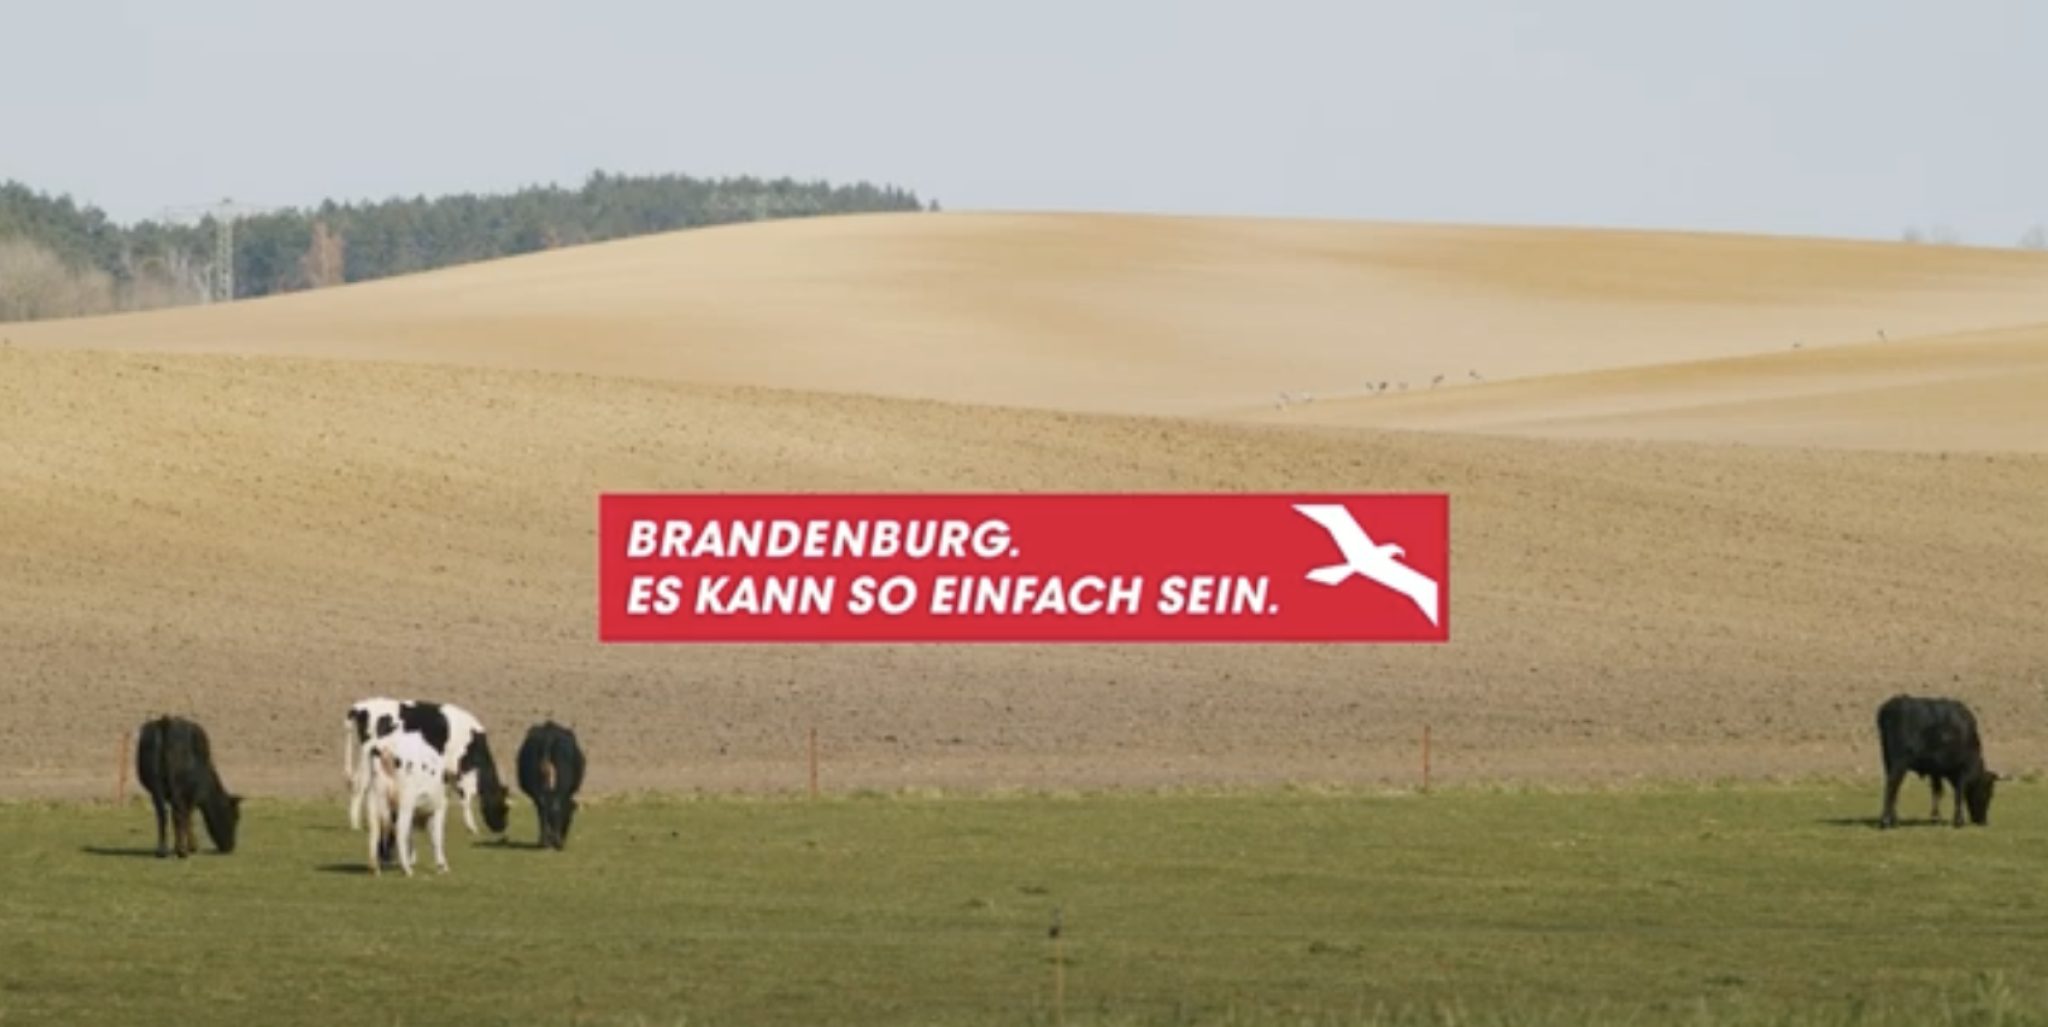 Kühe auf der Weide, im Hintergrund eine hügelige Landschaft und ein Wald. Eine Aufschrift "Brandenburg. Es kann so einfach sein"